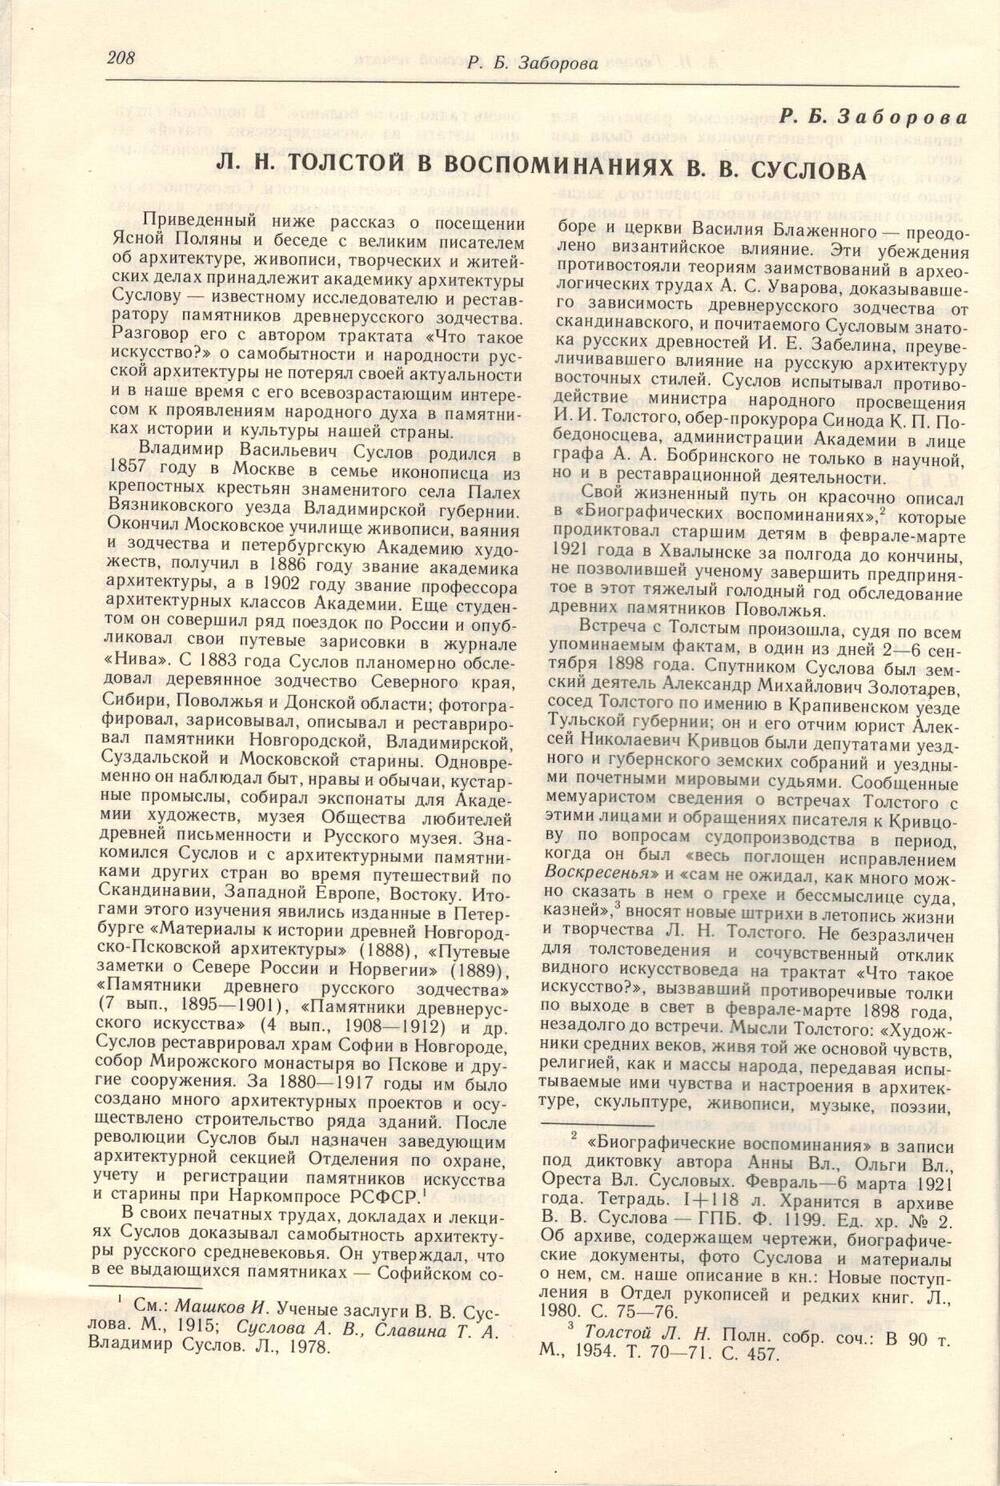 Статья в журнале Л.Н. Толстой в воспоминаниях В.В. Суслова Р.Б. Заборова